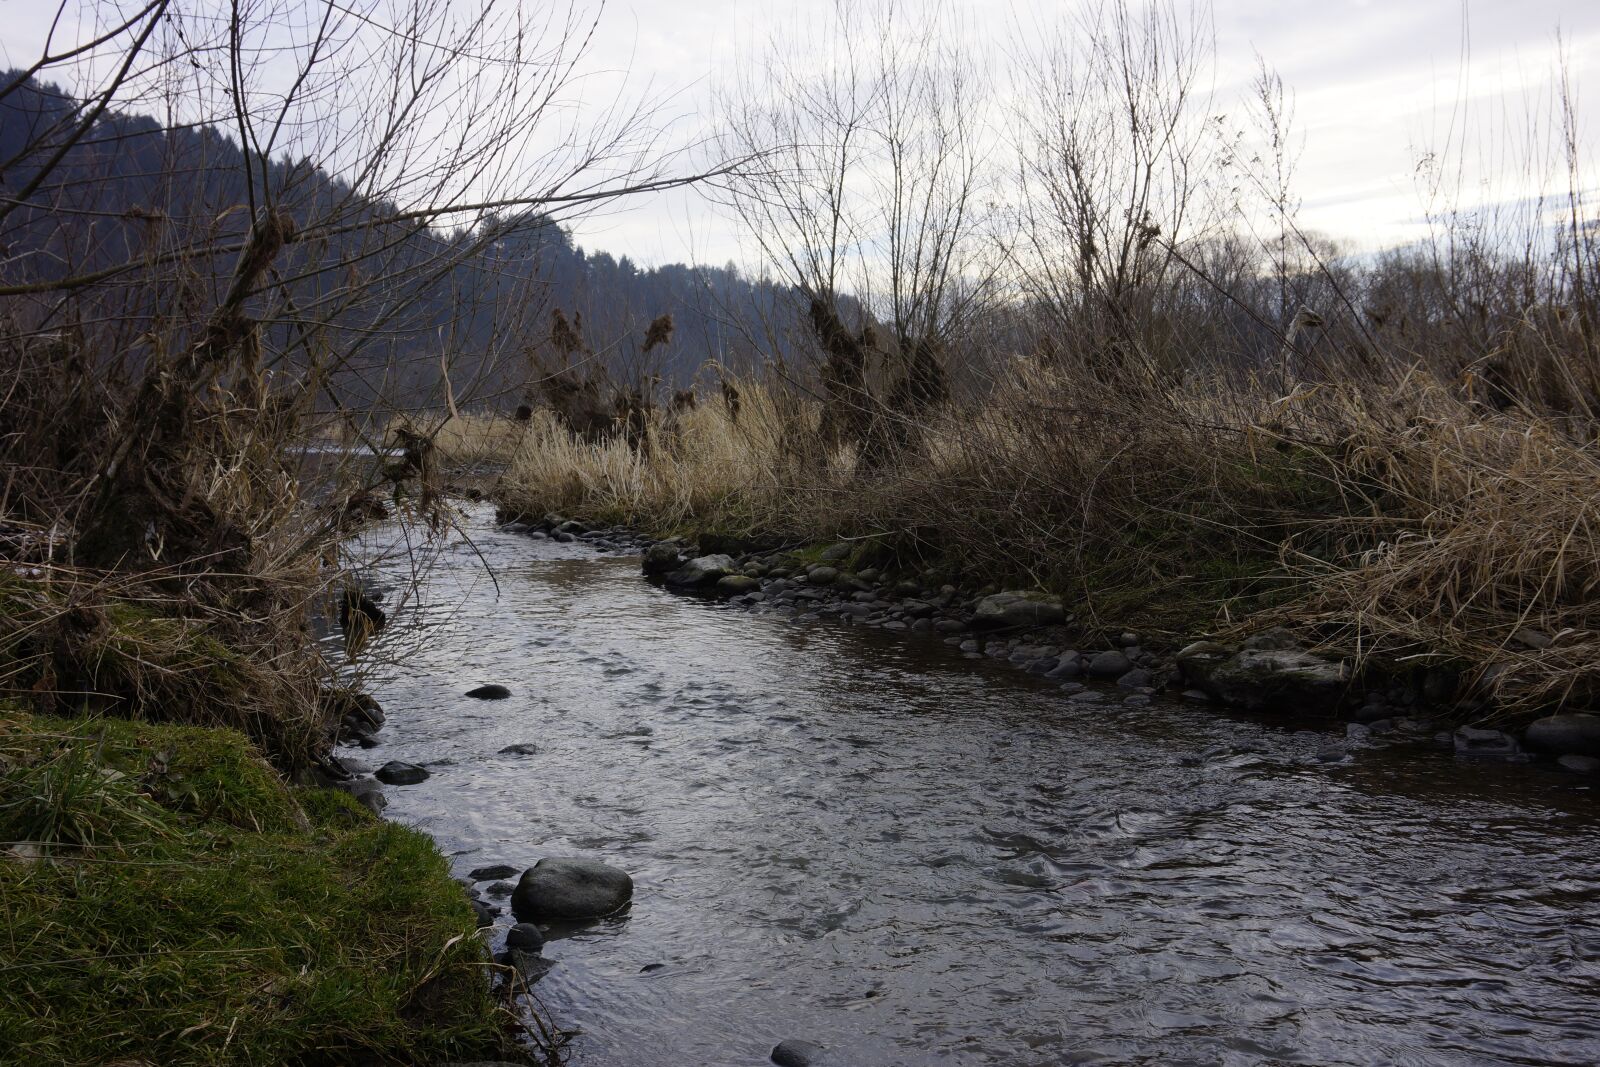 Sony Alpha NEX-7 + Sony E 16-50mm F3.5-5.6 PZ OSS sample photo. River, nature, pieniny photography